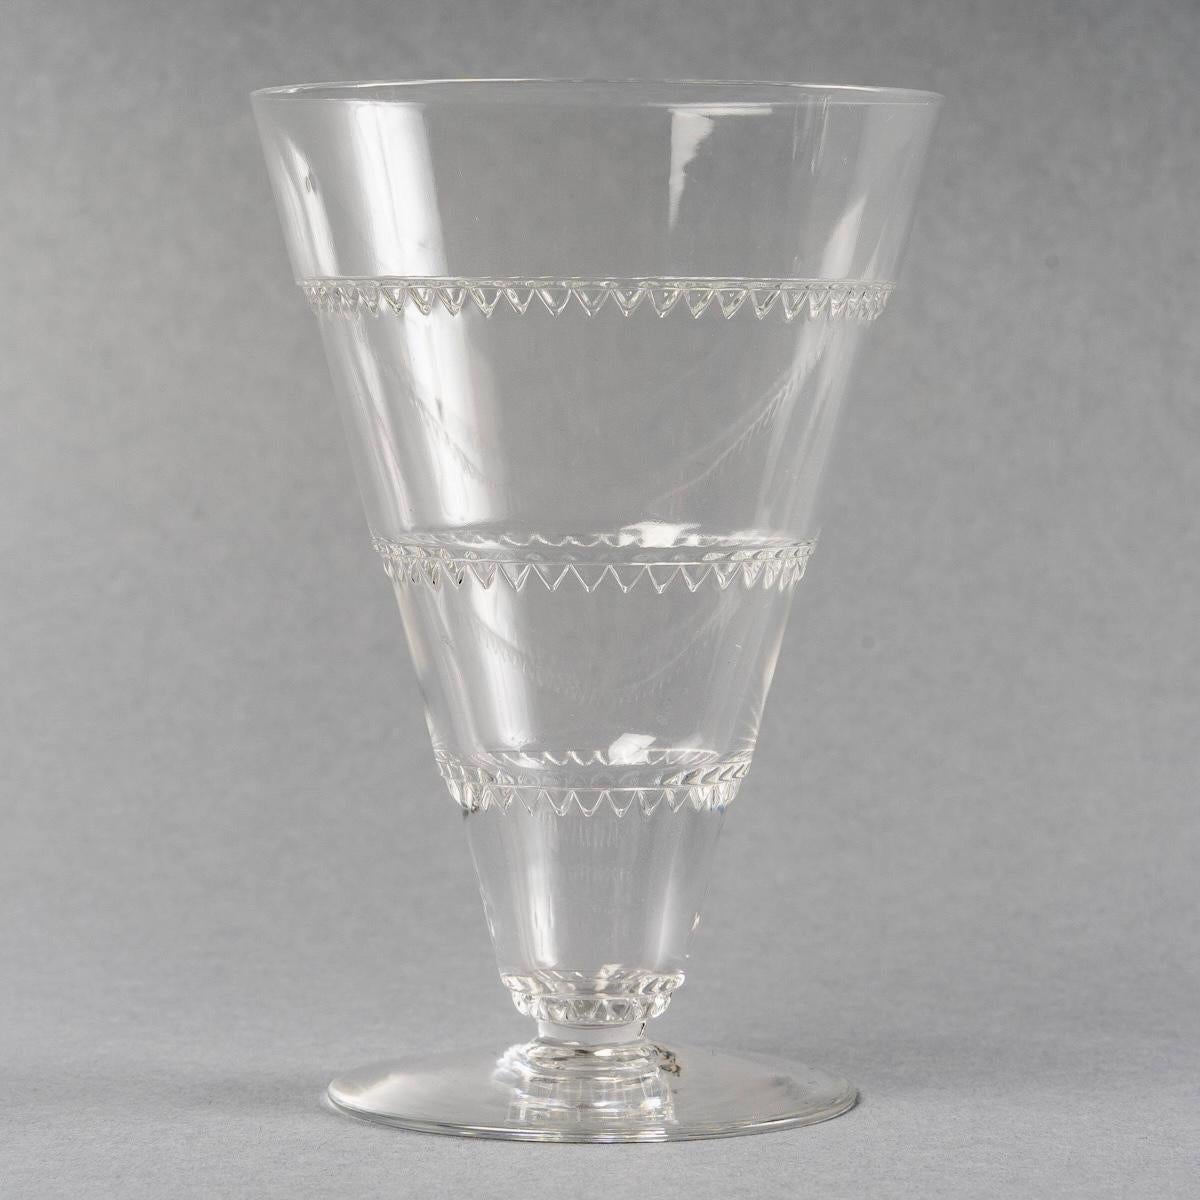 1932 René Lalique Set of Glasses Decanter Pitcher Vouvray Clear Glass 42 Pieces 6